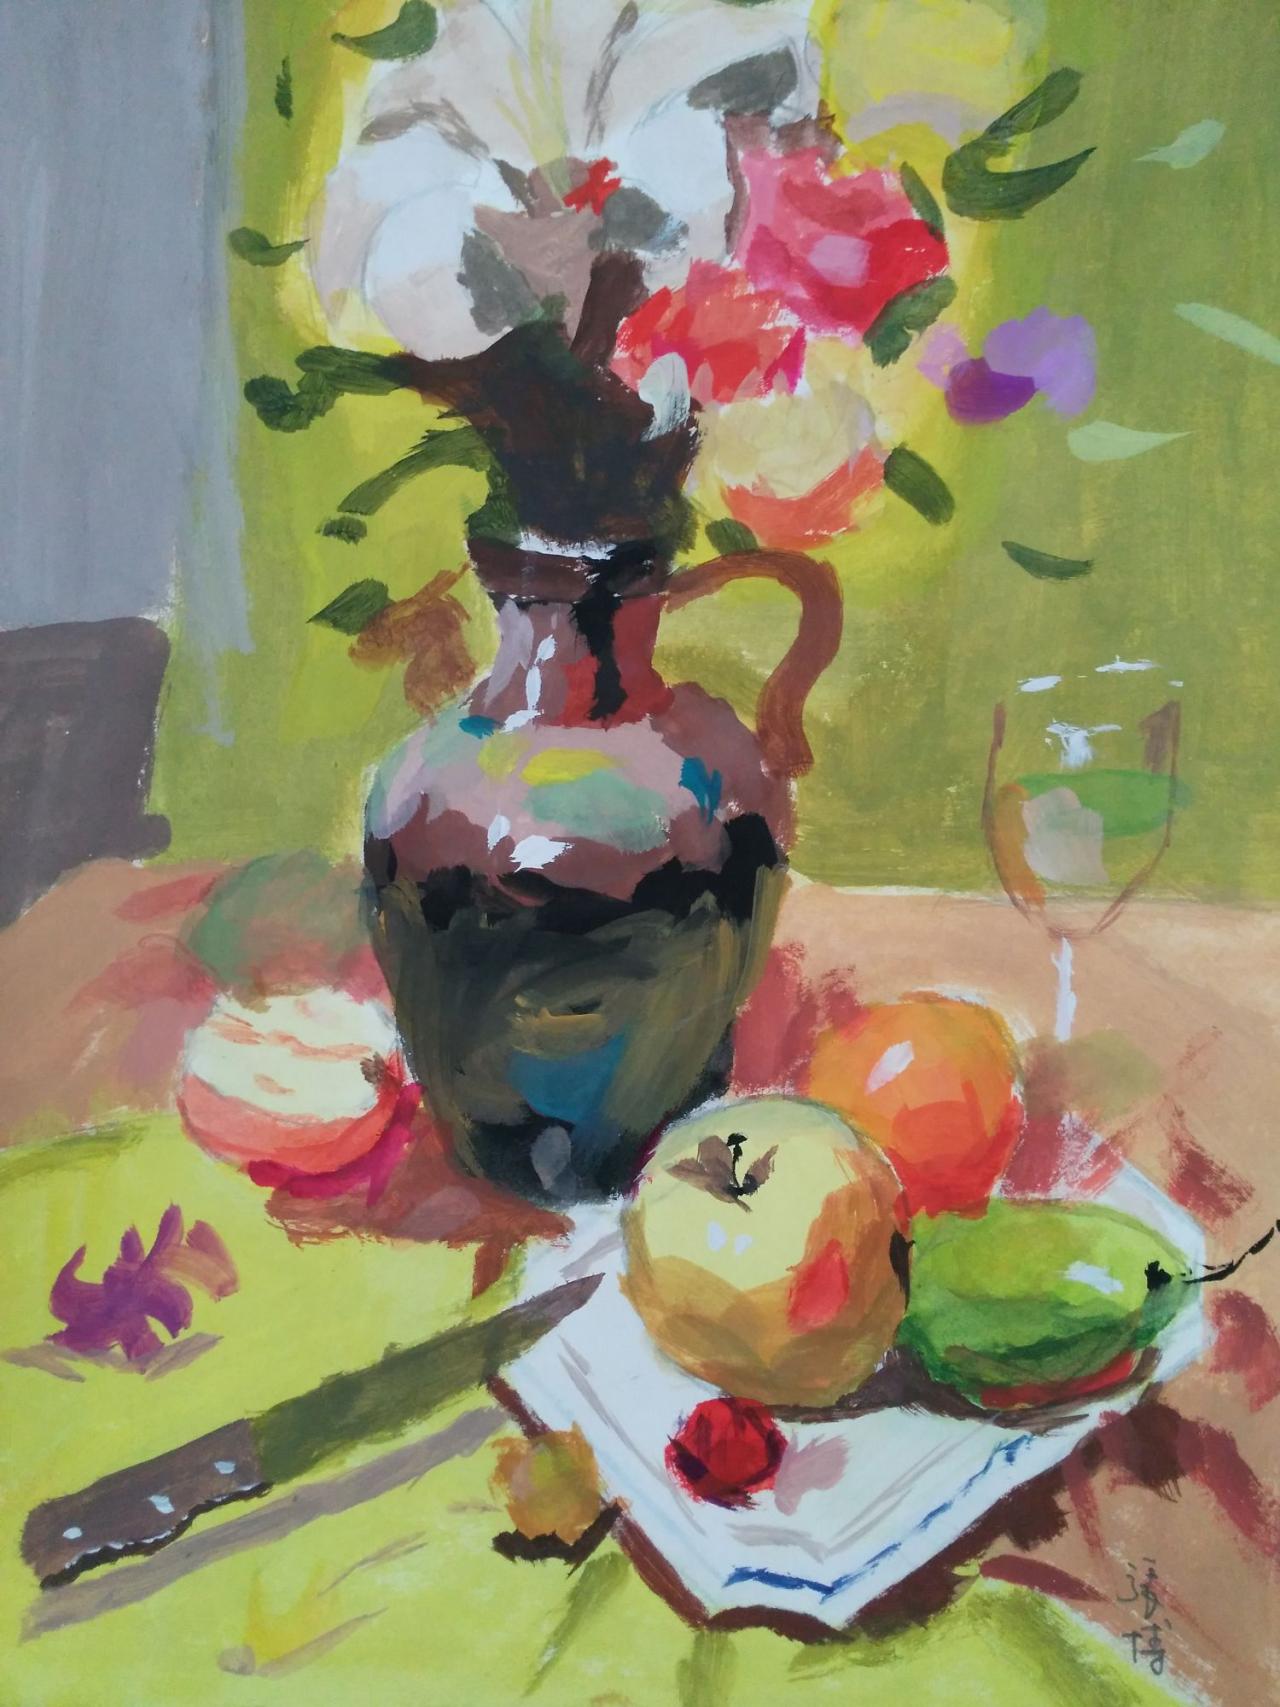 水粉静物 花瓶、水果刀、盘子、玻璃杯、苹果、梨等 张博画